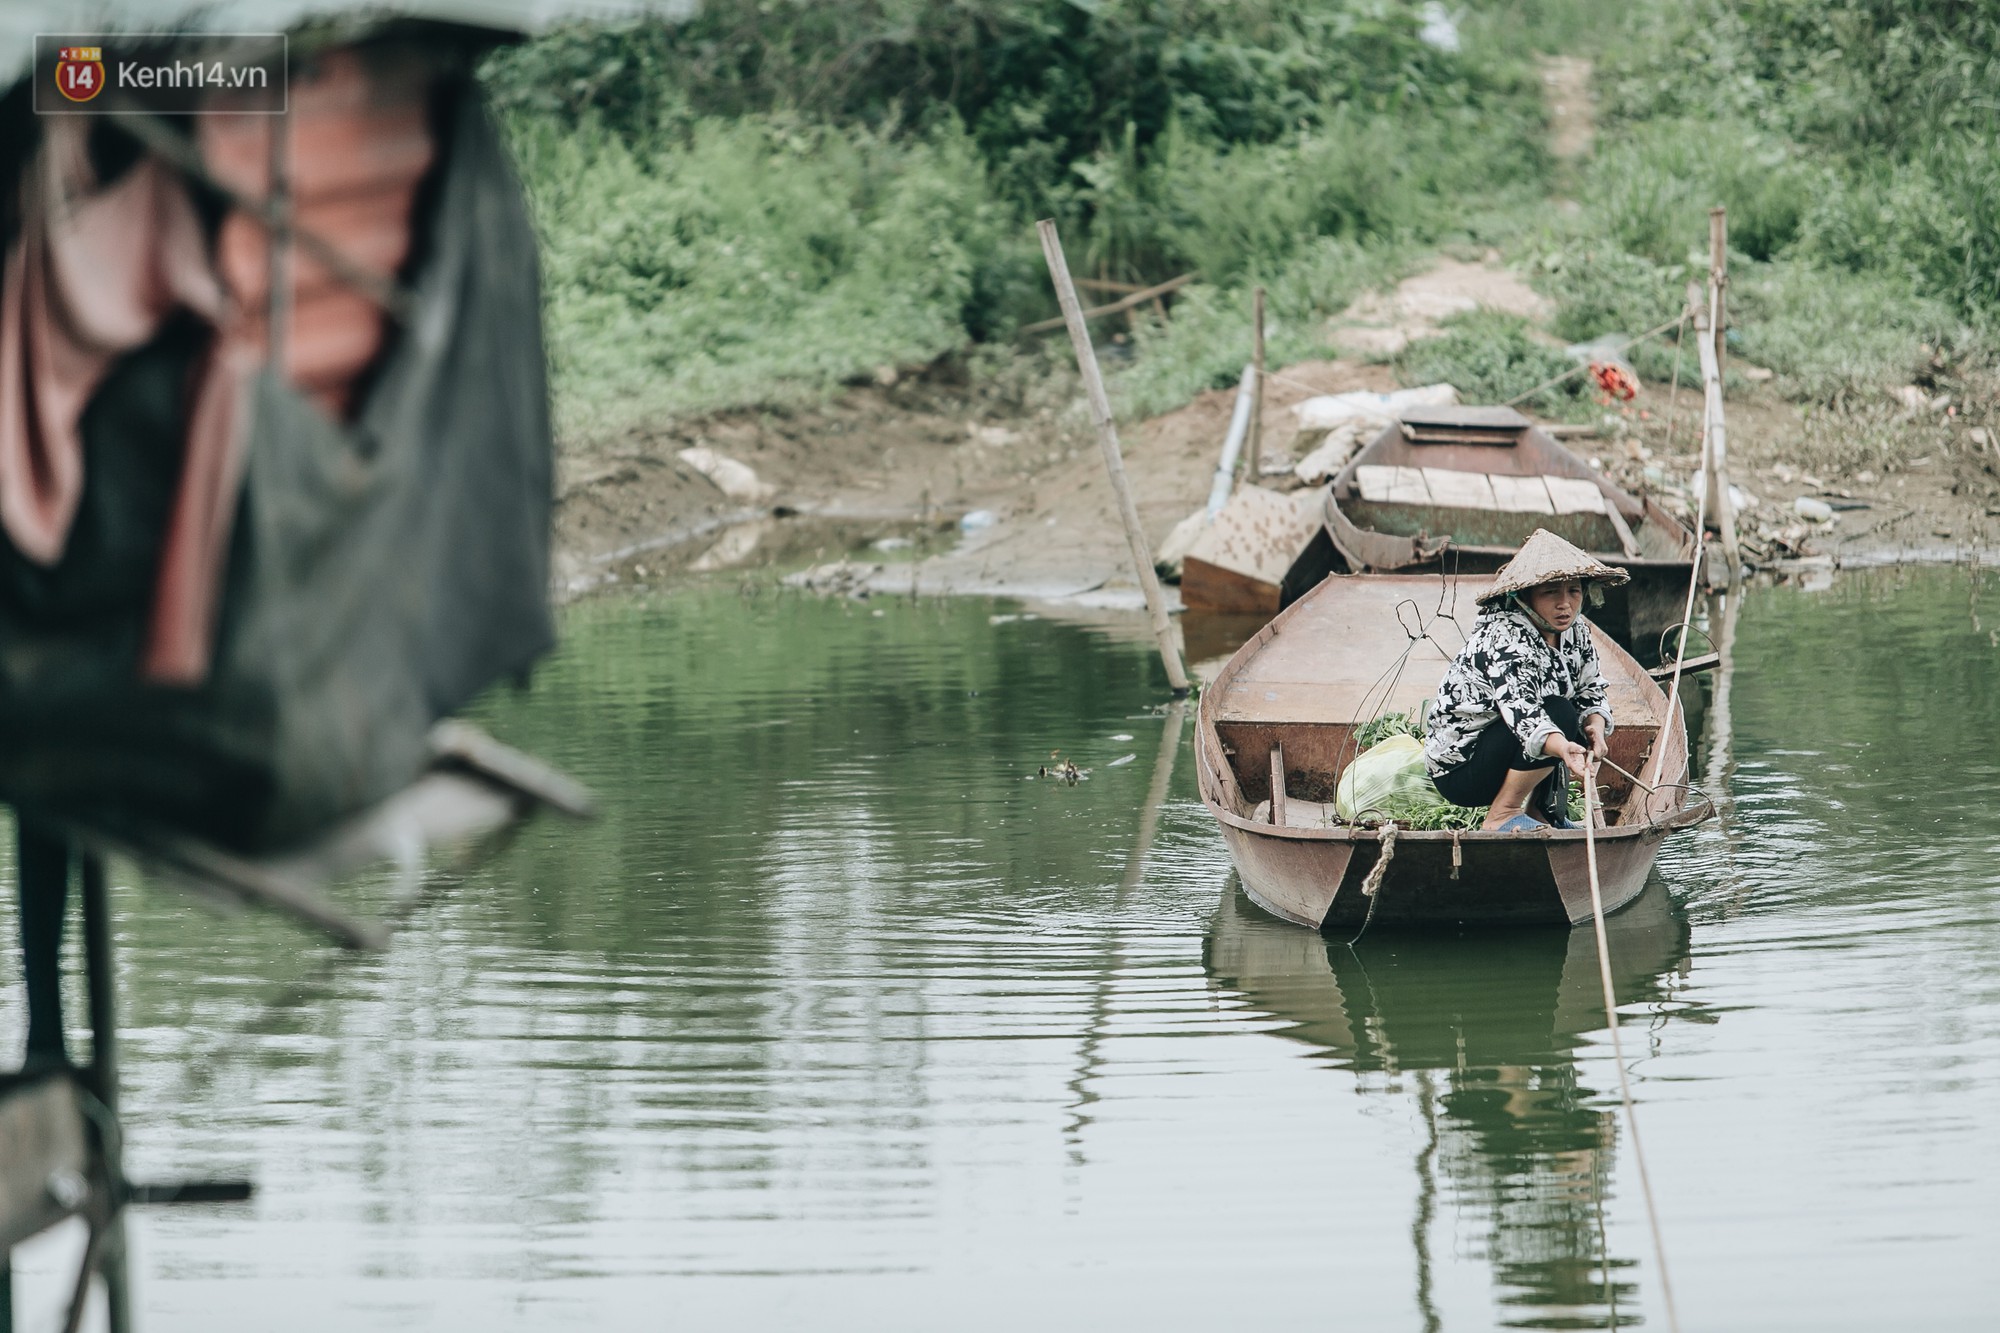 Cuộc sống lênh đênh trên thuyền của người lao động nhập cư ở Hà Nội: Chả có gì khó khăn, đông vui là chính - Ảnh 16.